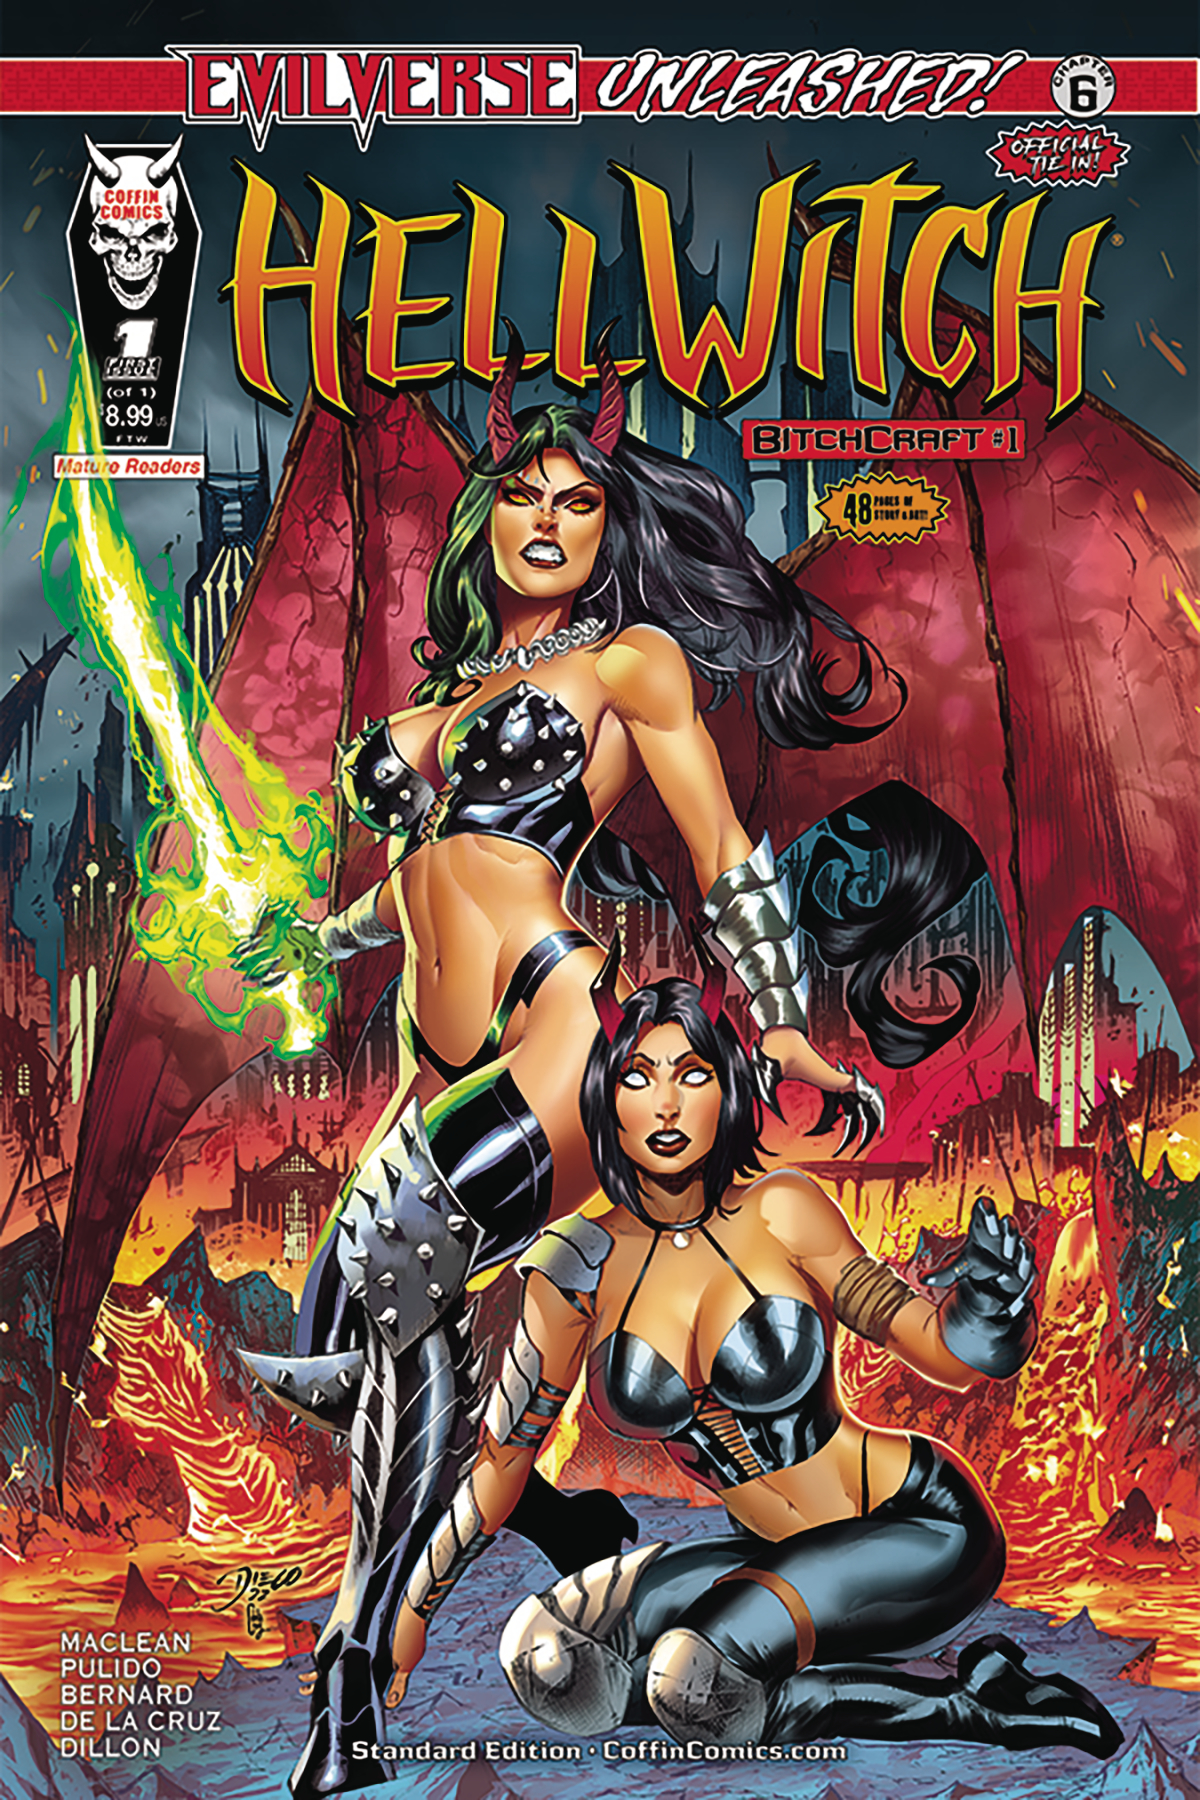 Hellwitch Bitchcraft #1 Cover A Diego Bernard Standard Edition (Mature)